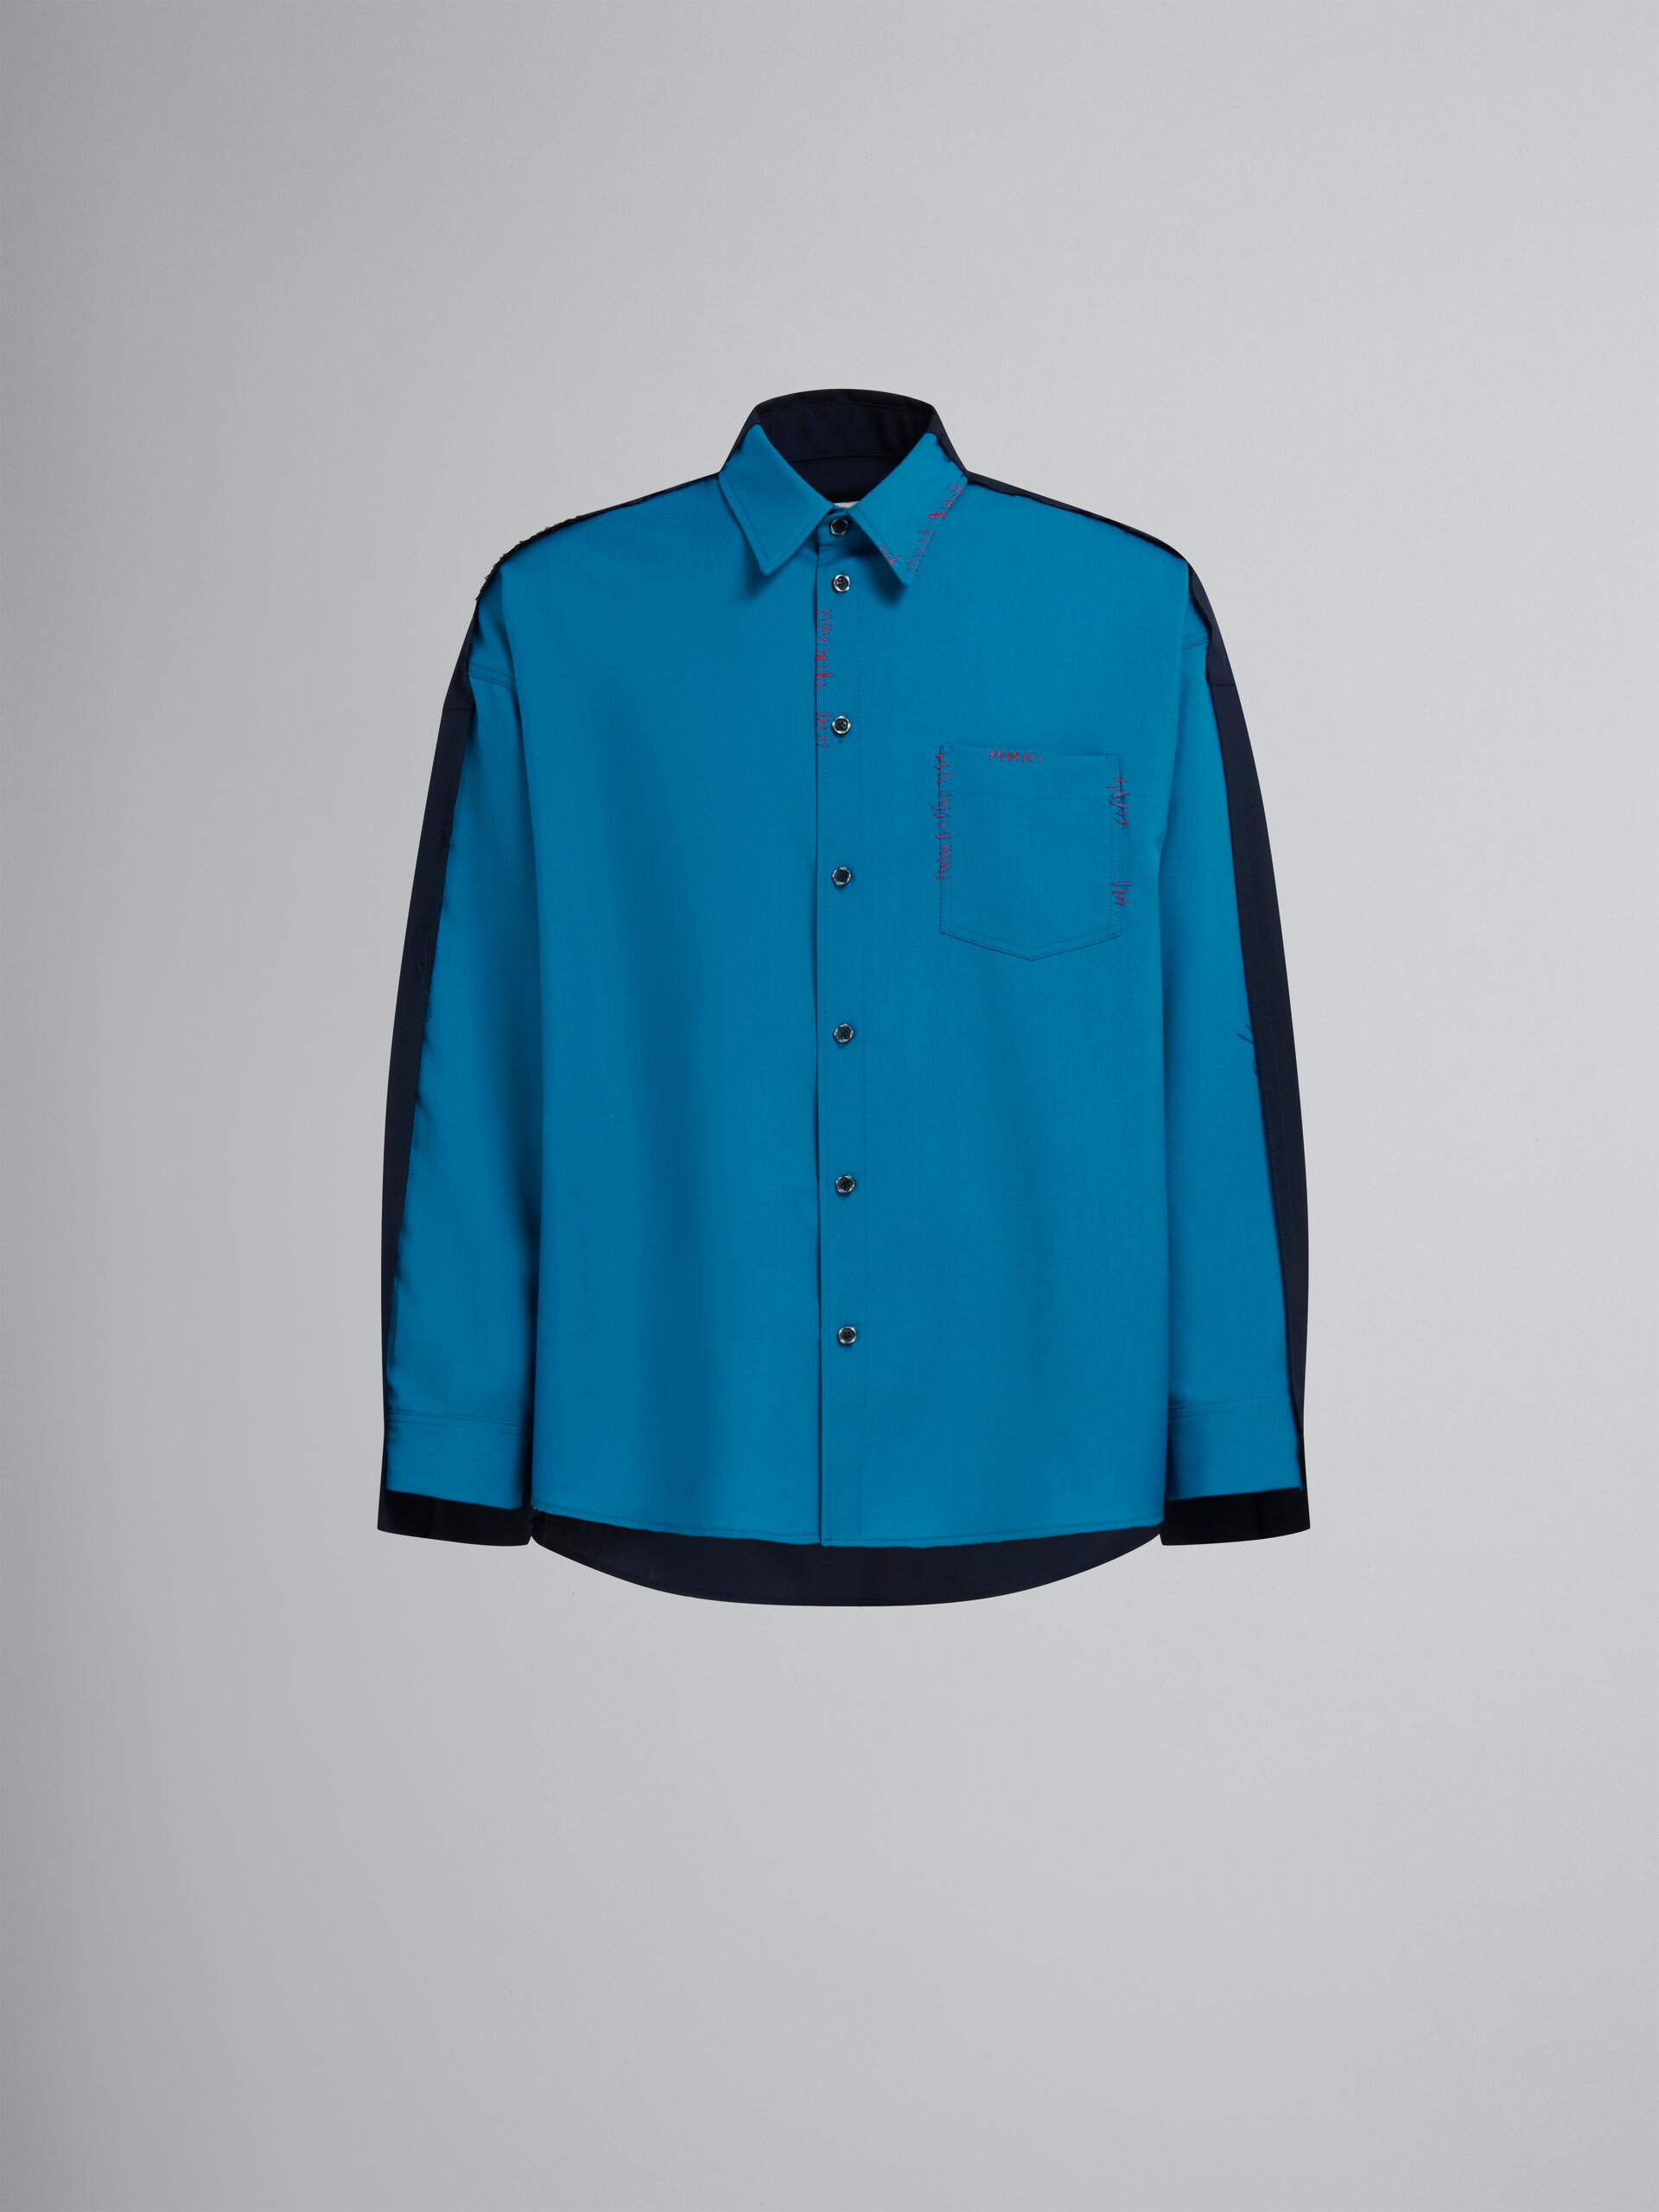 Chemise en laine tropicale bleue avec dos contrastant - Chemises - Image 1